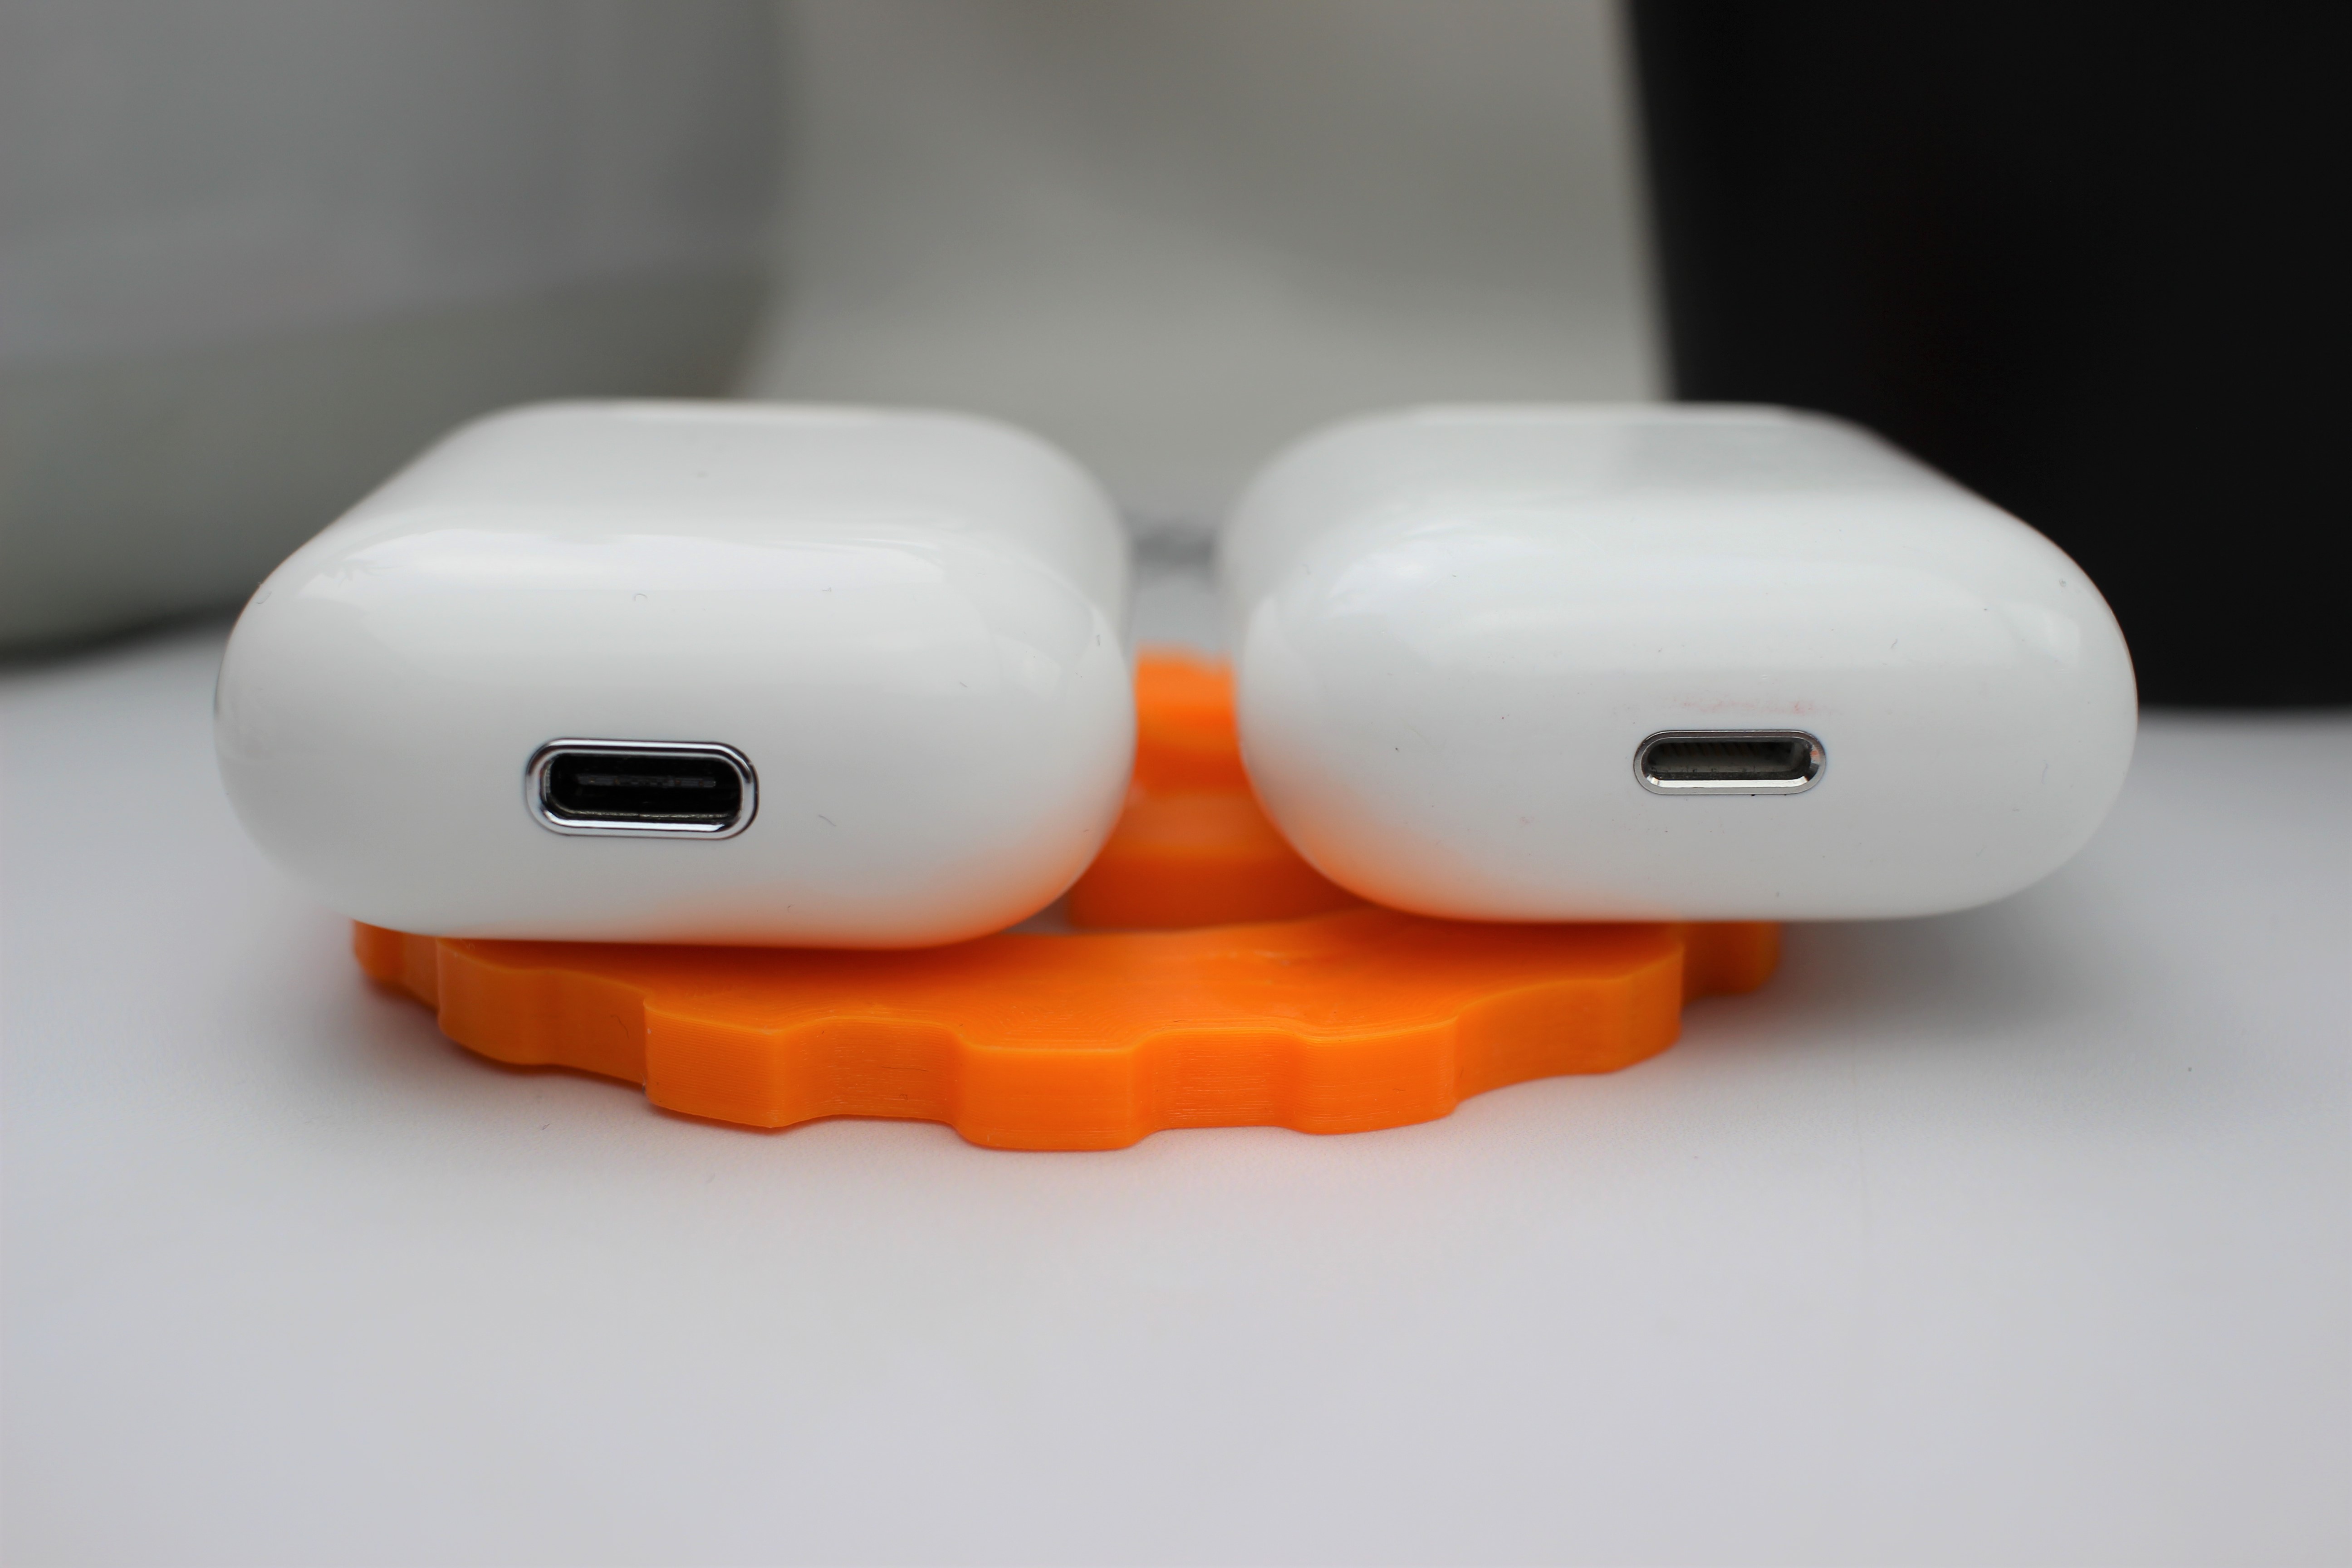 AirPod Klon im Test: Ist der TWS i10 Bluetooth Kopfhörer sogar besser?